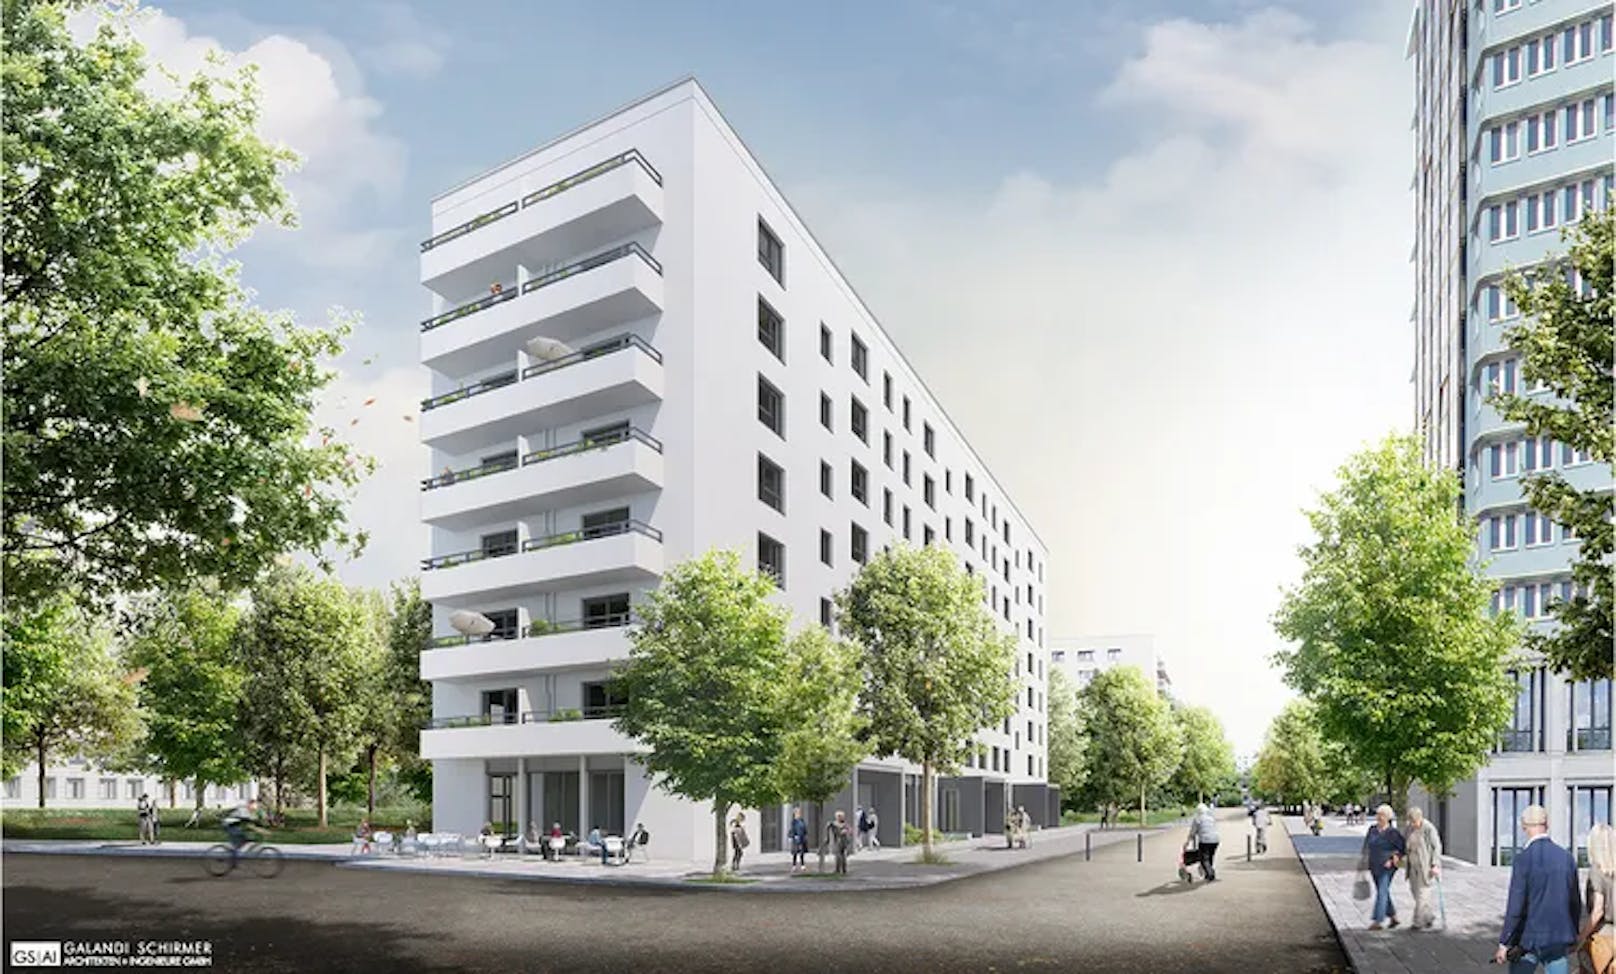 72 Wohnungen für lesbische Frauen werden in Berlin errichtet.